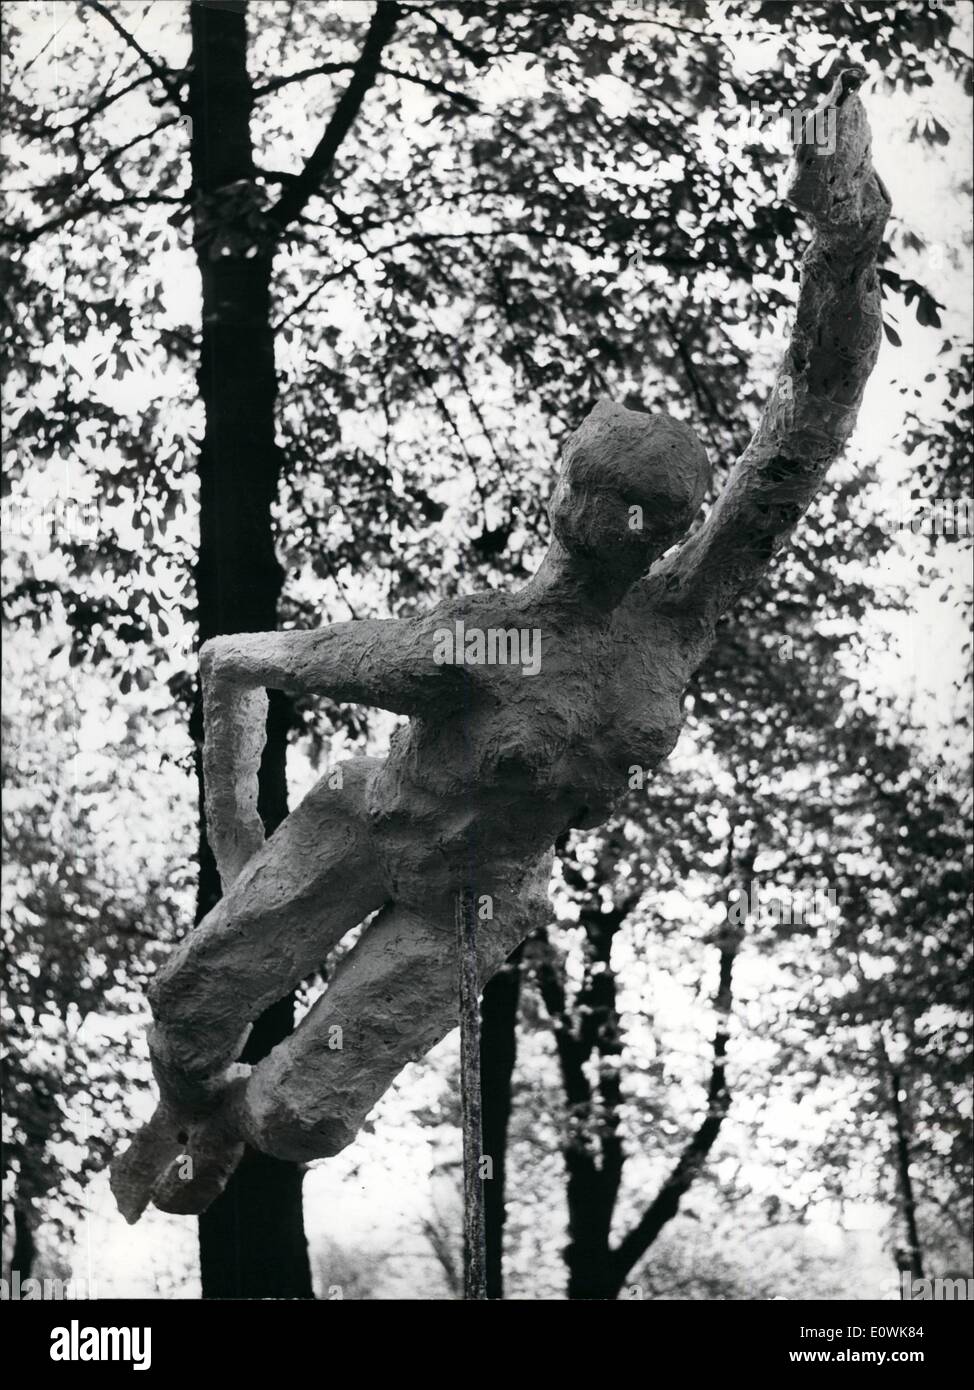 4. April 1963 - Young Skulpturen jährliche Ausstellung in Paris: Diese Statue Schwimmer (Naguse), die in der Luft zu schweben scheint gehört zu den Skulpturen Ausstellung seit gestern auf Young Skulptur jährliche Messe in den Gärten des Musée Rodin in Paris. Stockfoto